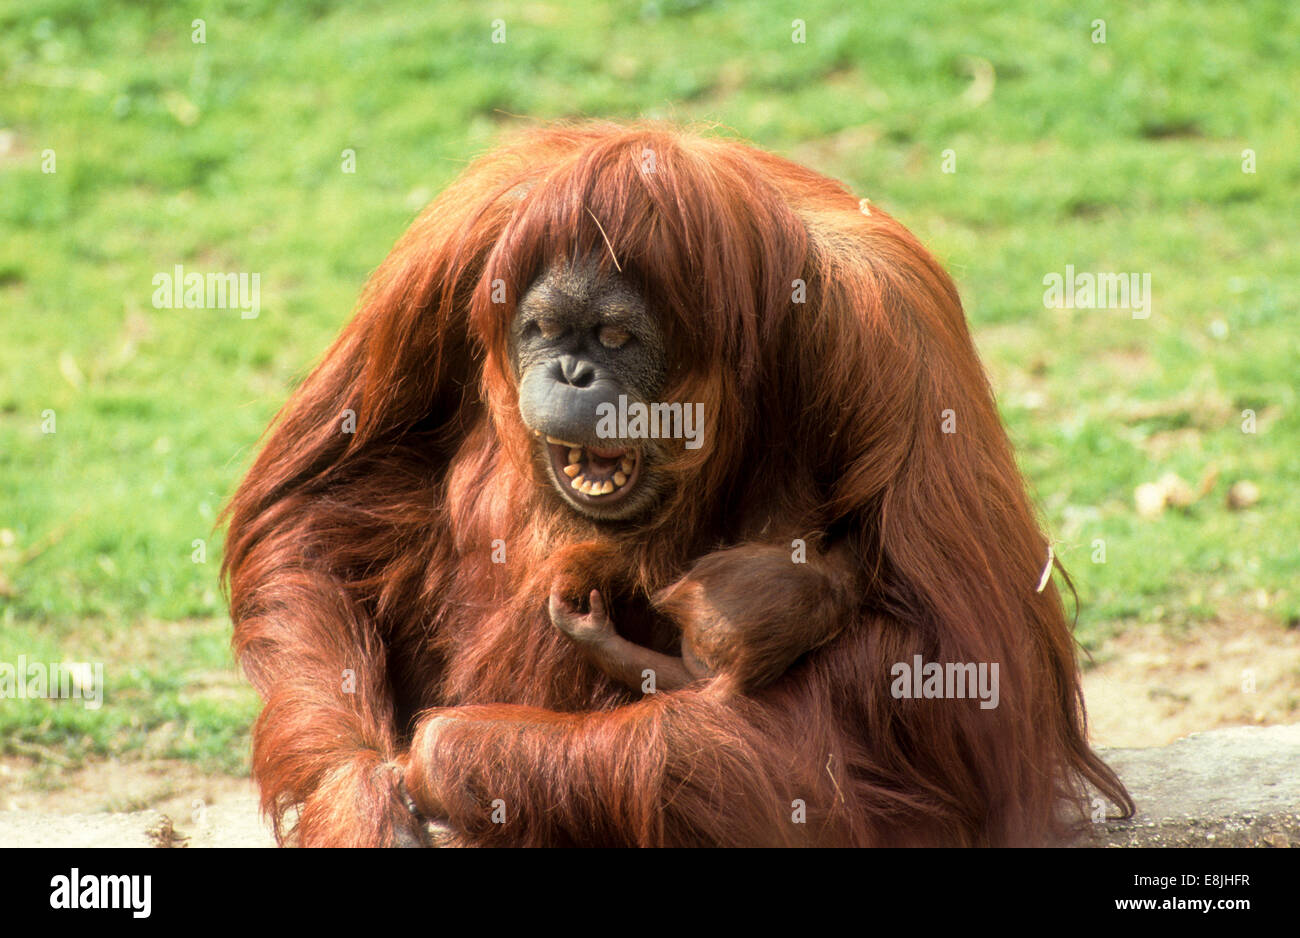 L'orang-outan de Sumatra (Pongo abelii ou Pongo pygmaeus abelii) Mère avec enfant dans un zoo Banque D'Images